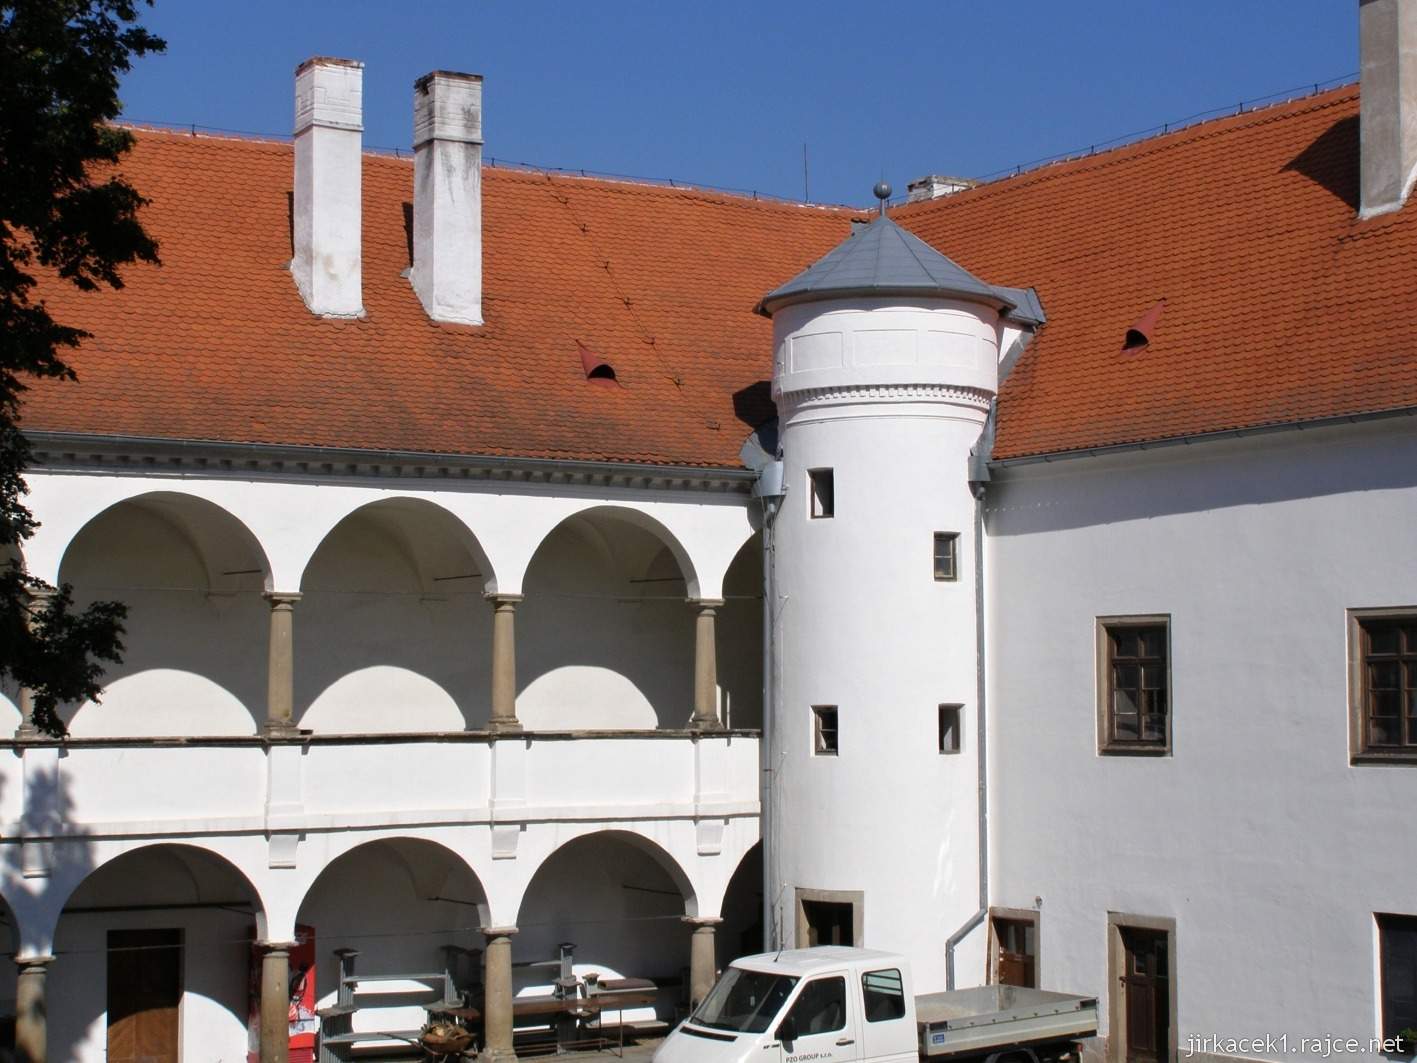 zámek Oslavany 14 - nároží zámku s vestavěnou věží